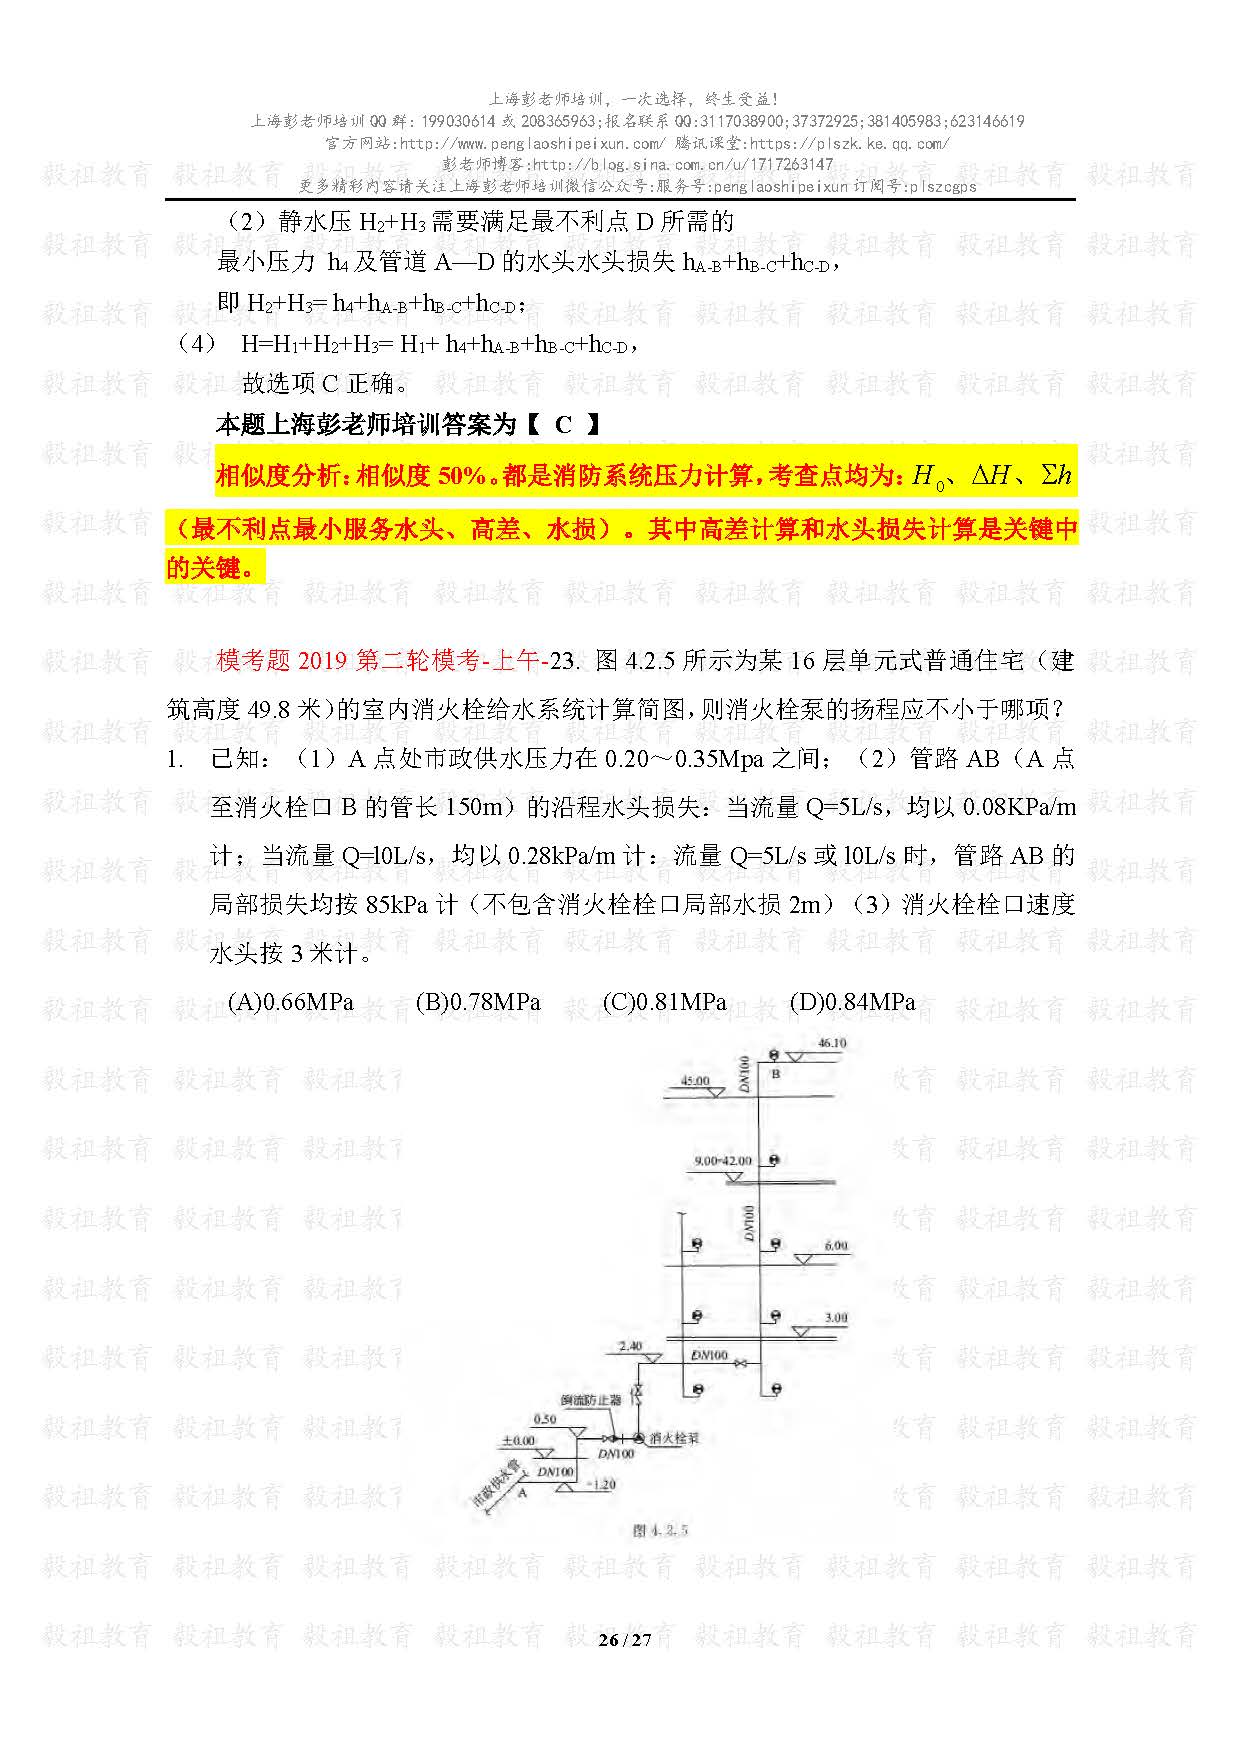 2020注册给排水考试真题与模考题相似度分析-上海彭老师培训_页面_26.jpg.jpg